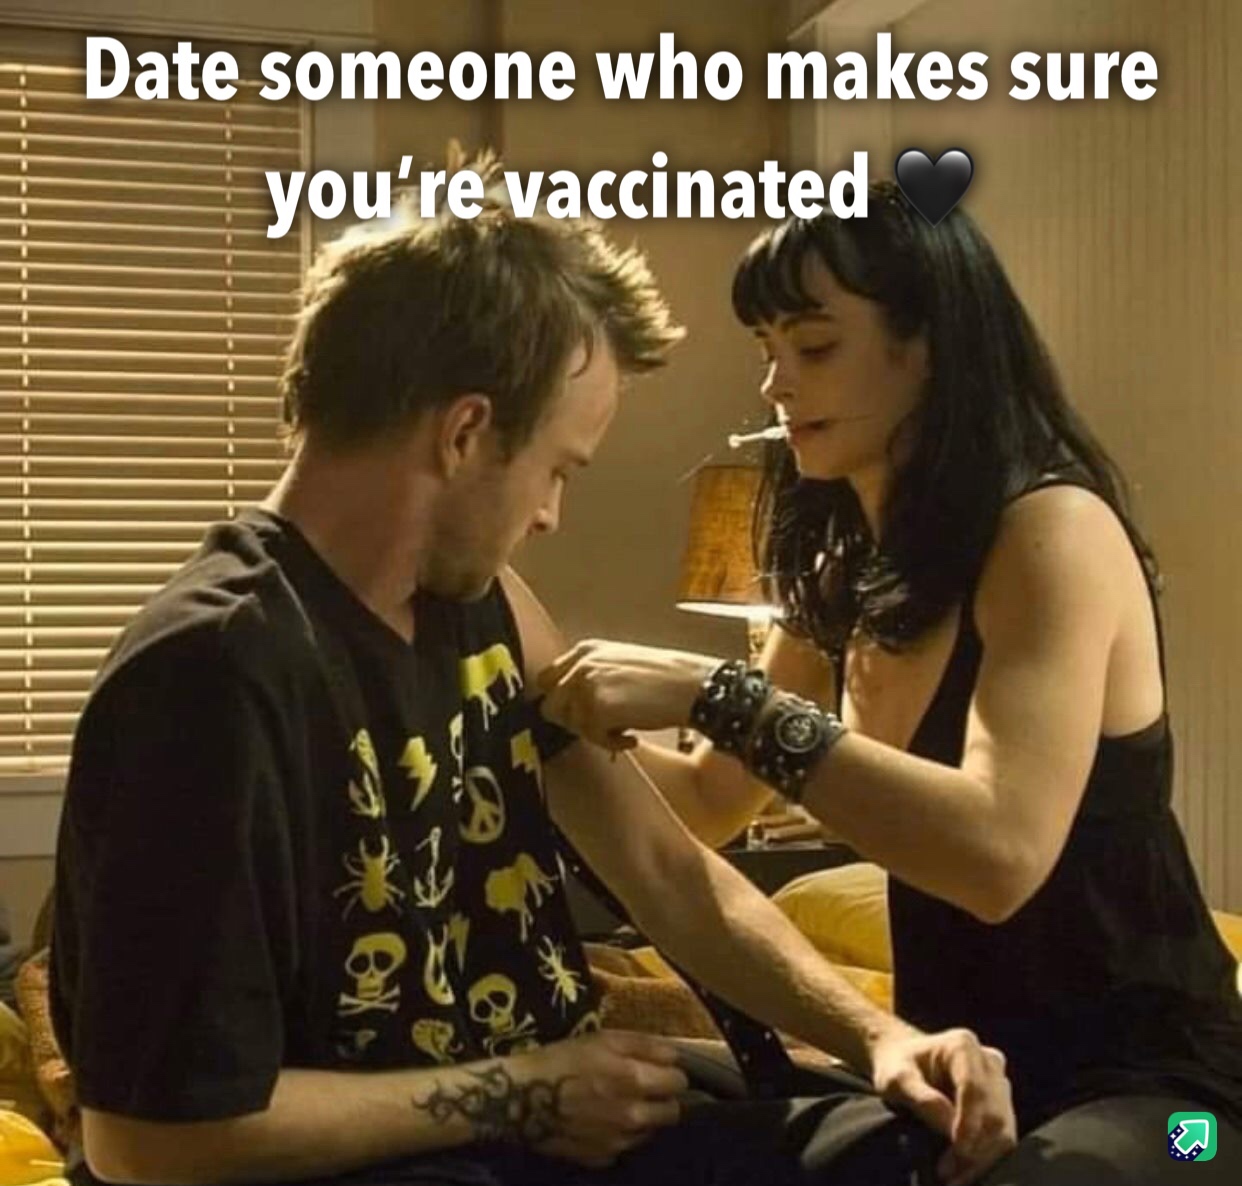 jesse pinkman girlfriend - Date someone who makes sure you're vaccinated Pe fiffffffffffffiiiiiiiiiiiiiii